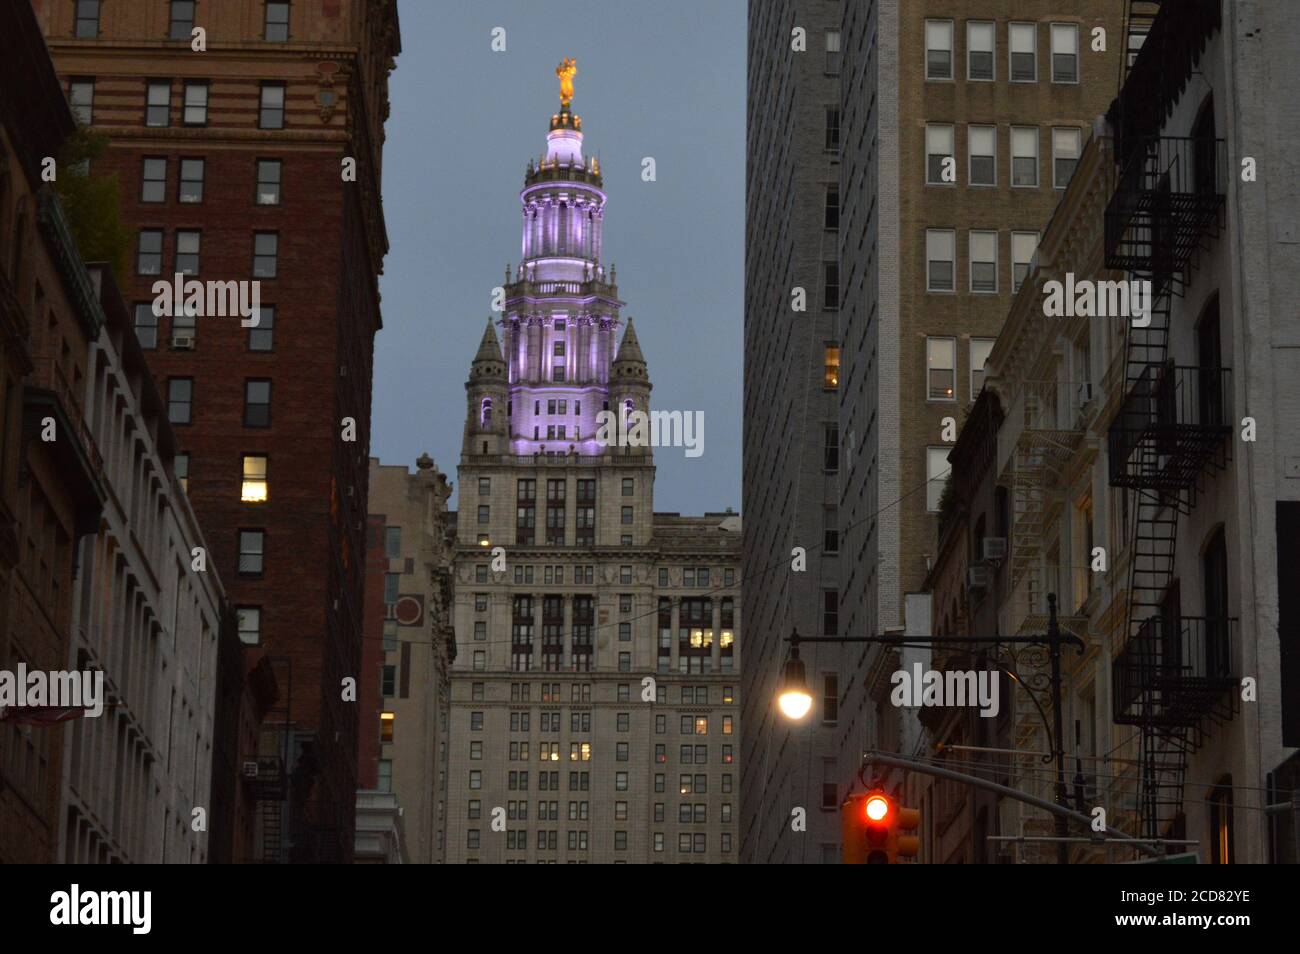 Das städtische Gebäude in New York City wurde zu Ehren des hundertjährigen Wahlrechts am Tag der Frauengleichheit (August 26,2020) violett beleuchtet. Stockfoto